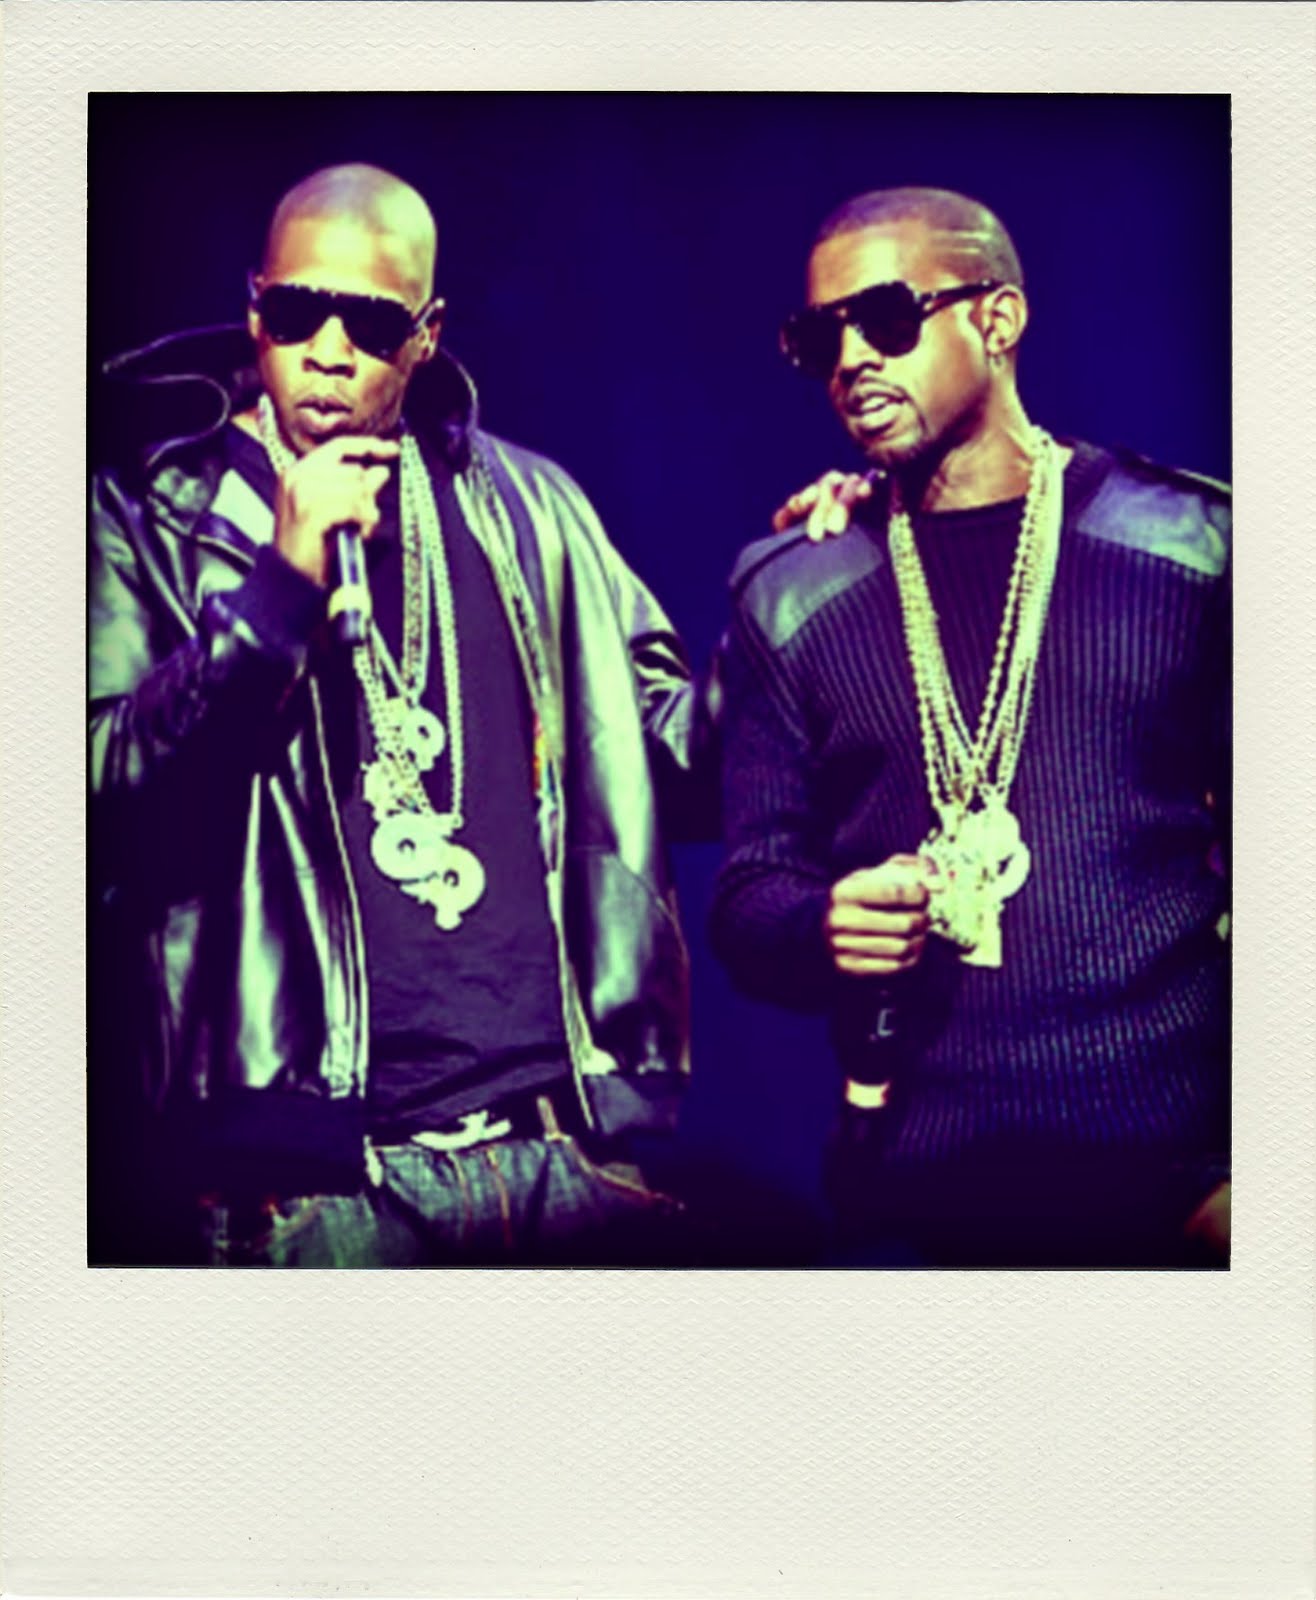 http://2.bp.blogspot.com/-LZocZmYeUFk/TbPGQ1x4Q5I/AAAAAAAACOs/AWKh_UOy4Ms/s1600/wpid-Jay-Z-Kanye-West-pola.jpg